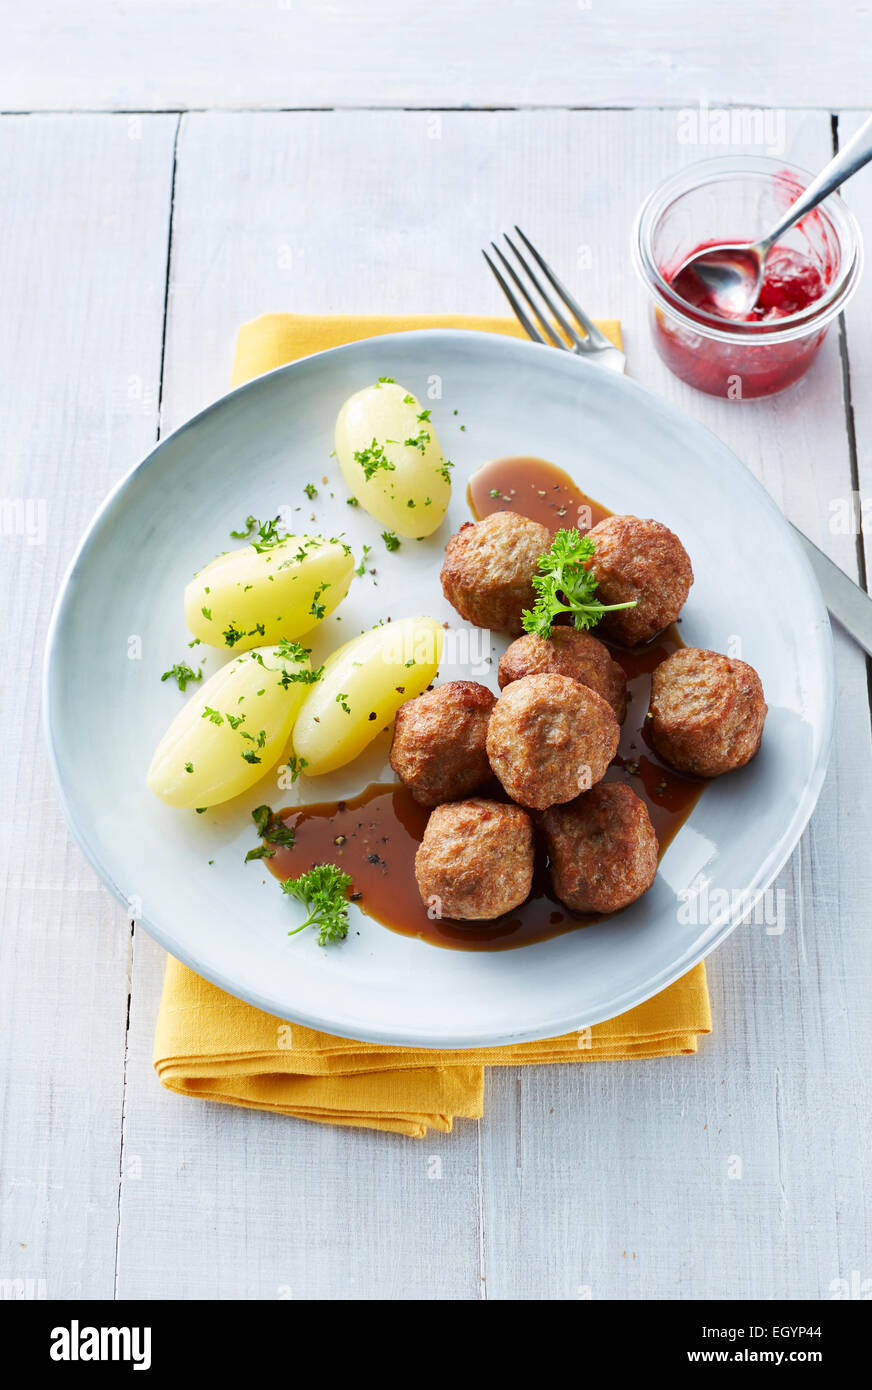 Koettbullar, schwedischen Fleischbällchen mit Kartoffeln und Sauce auf ...